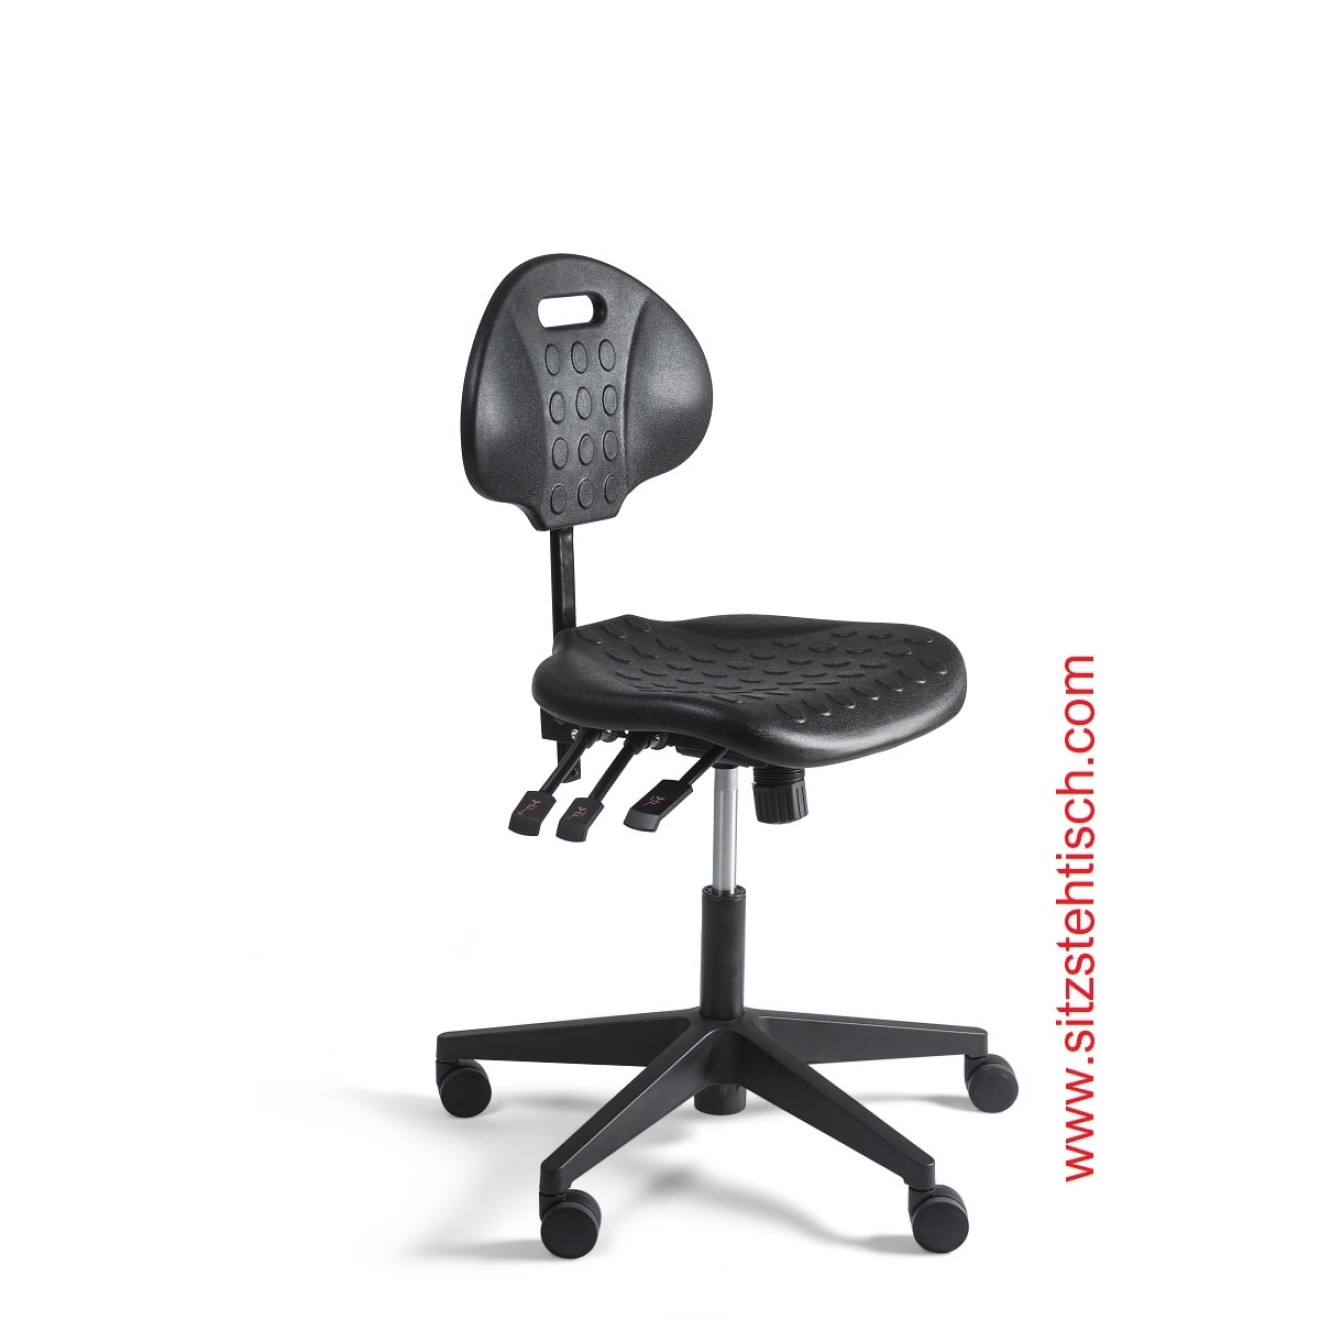 Arbeitsstuhl niedrig - Rücken- und Sitzwinkelverstellung - Sitz- und Rücken aus PU Schaum schwarz - Fußkreuz Kunststoff mit Rollen - 5 Jahre Garantie -100281